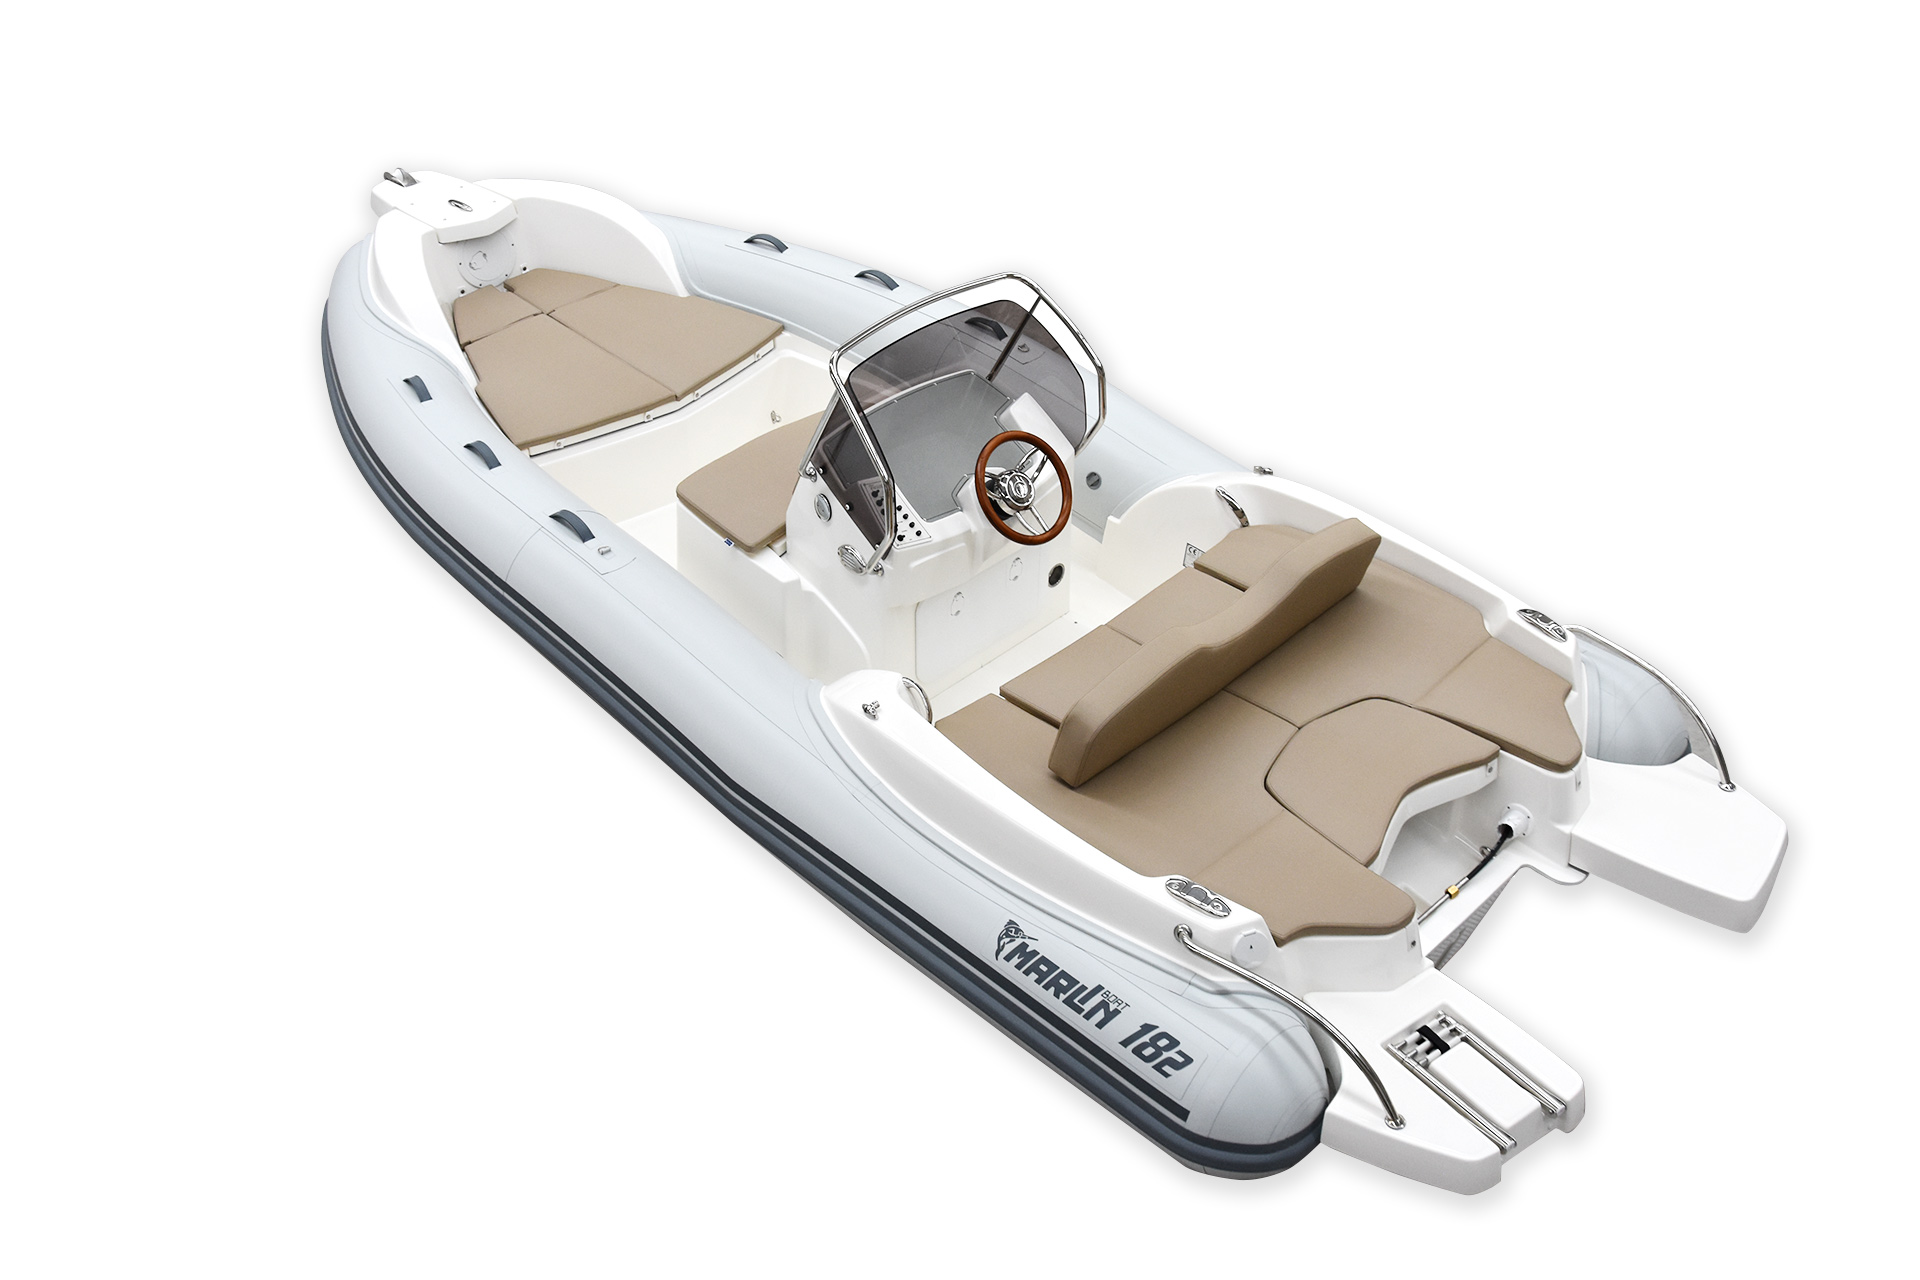 Marlin Boat - Gommone Fuoribordo Modello 182